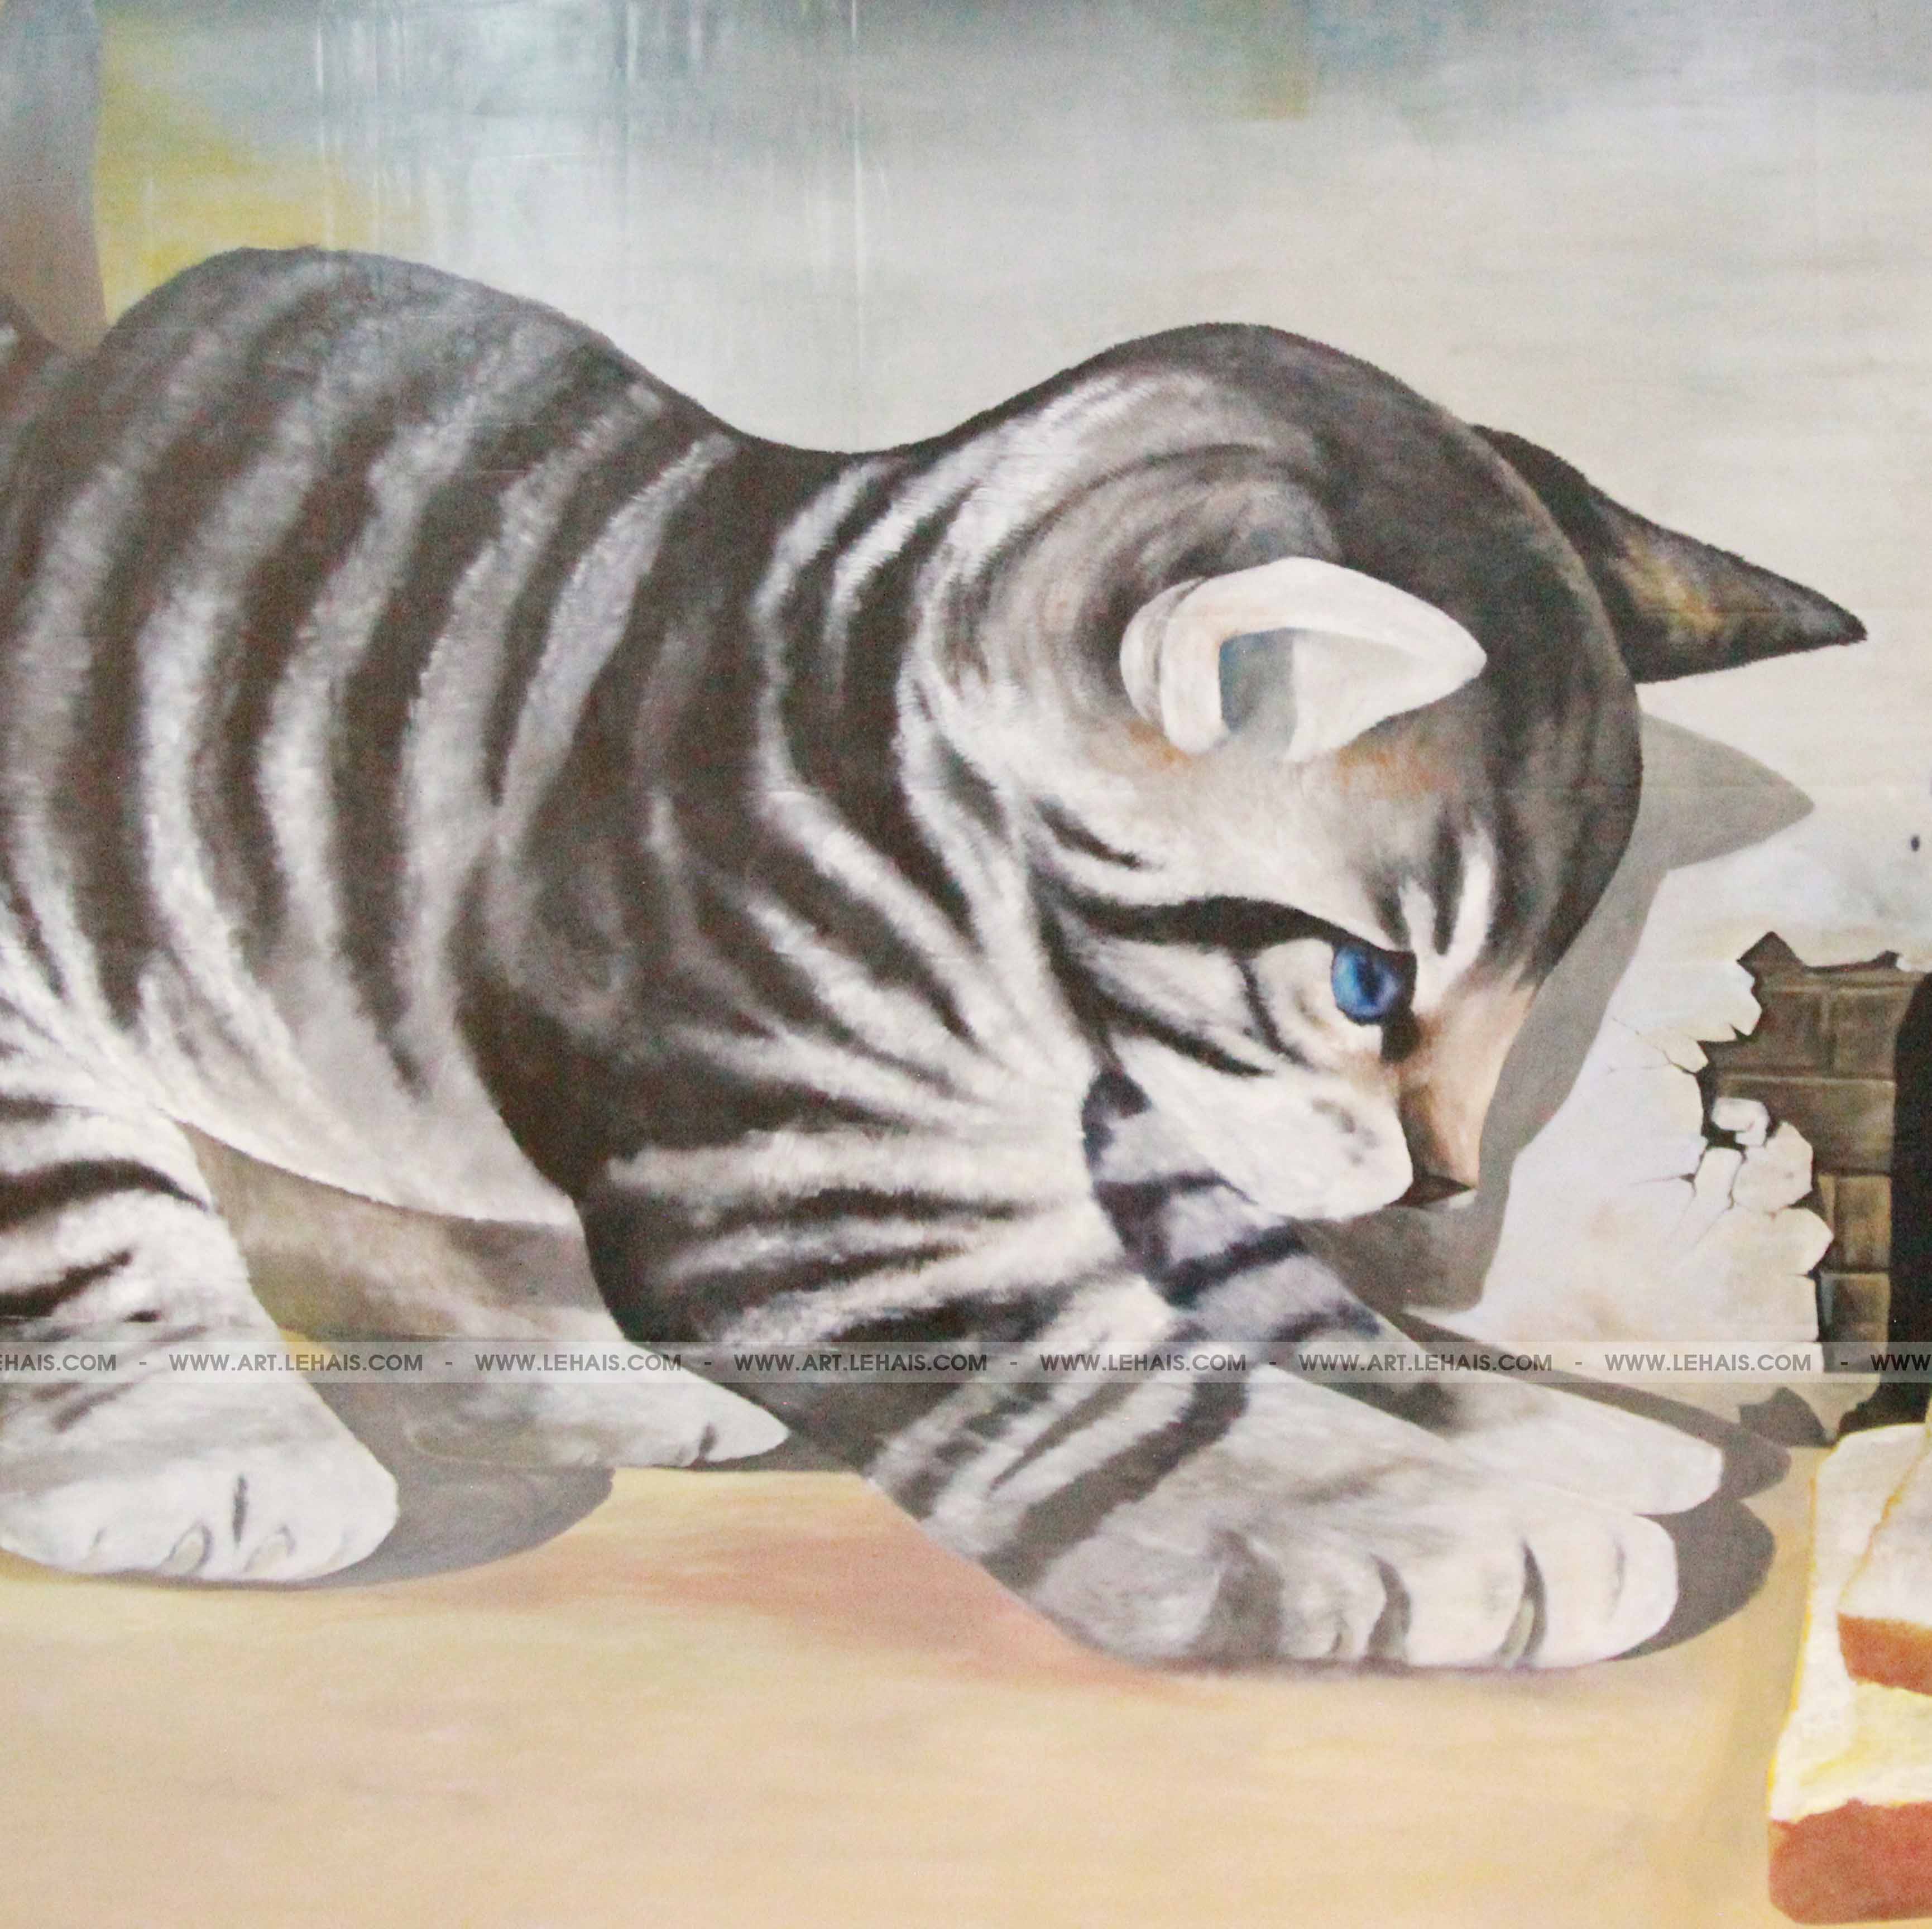 Tranhs vẽ 3D mèo khổng lồ vẽ tại Mipec Long Biên, Hà Nội là một trong những điểm đến lý tưởng cho những ai đam mê nghệ thuật và muốn tìm hiểu về tranh vẽ 3D đầy ấn tượng. Hãy đến và khám phá những bức tranh nghệ thuật tuyệt đẹp này.